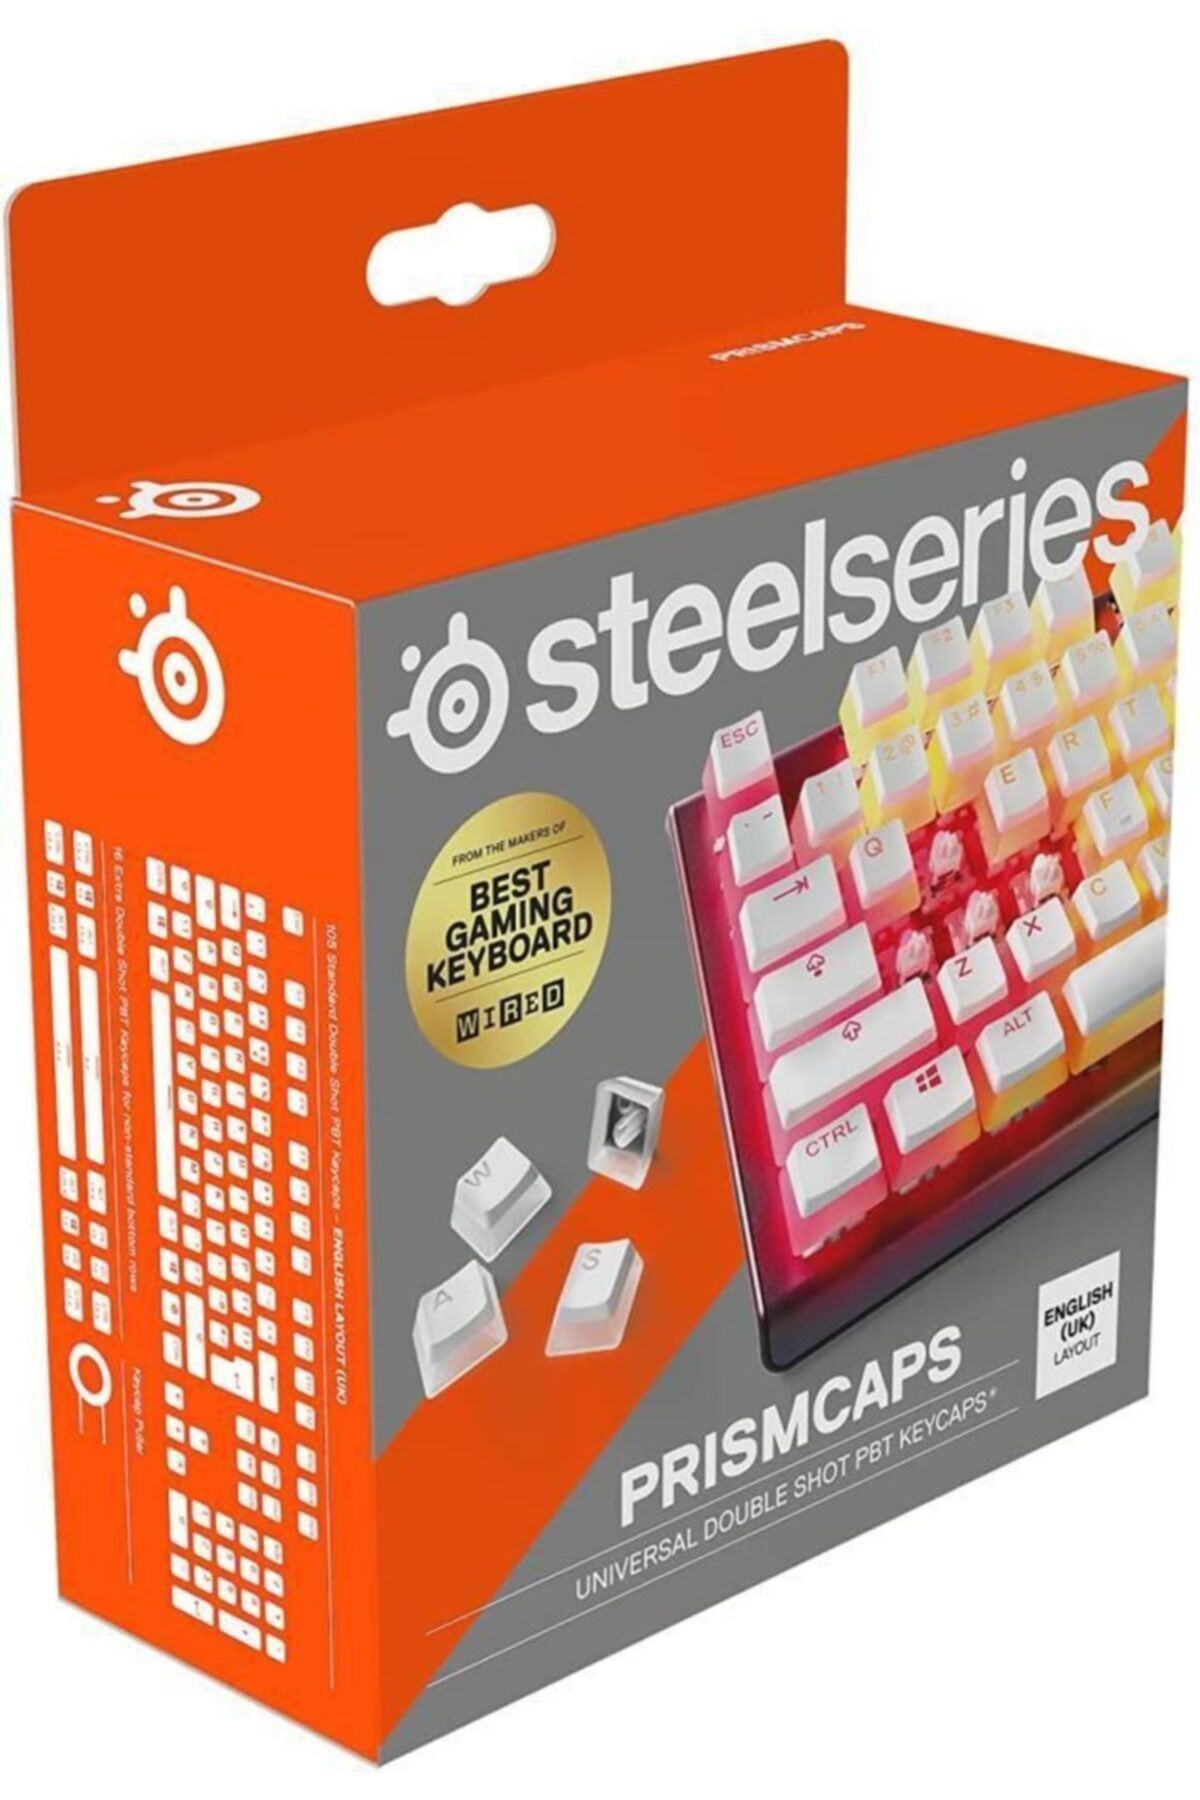 SteelSeries Prismcaps Beyaz Tuş Takımı Uk